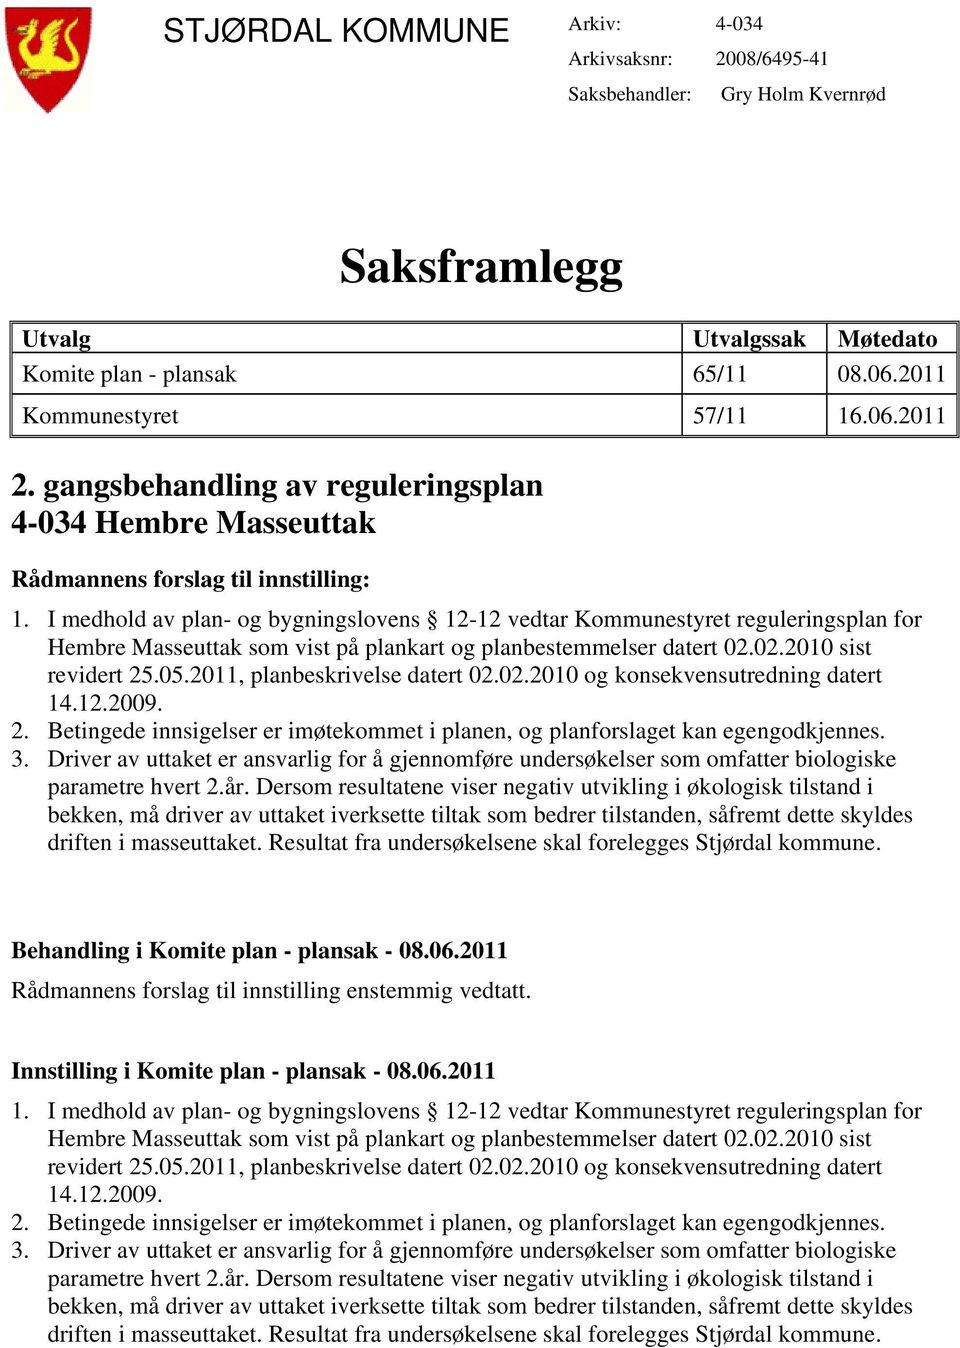 I medhold av plan- og bygningslovens 12-12 vedtar Kommunestyret reguleringsplan for Hembre Masseuttak som vist på plankart og planbestemmelser datert 02.02.2010 sist revidert 25.05.